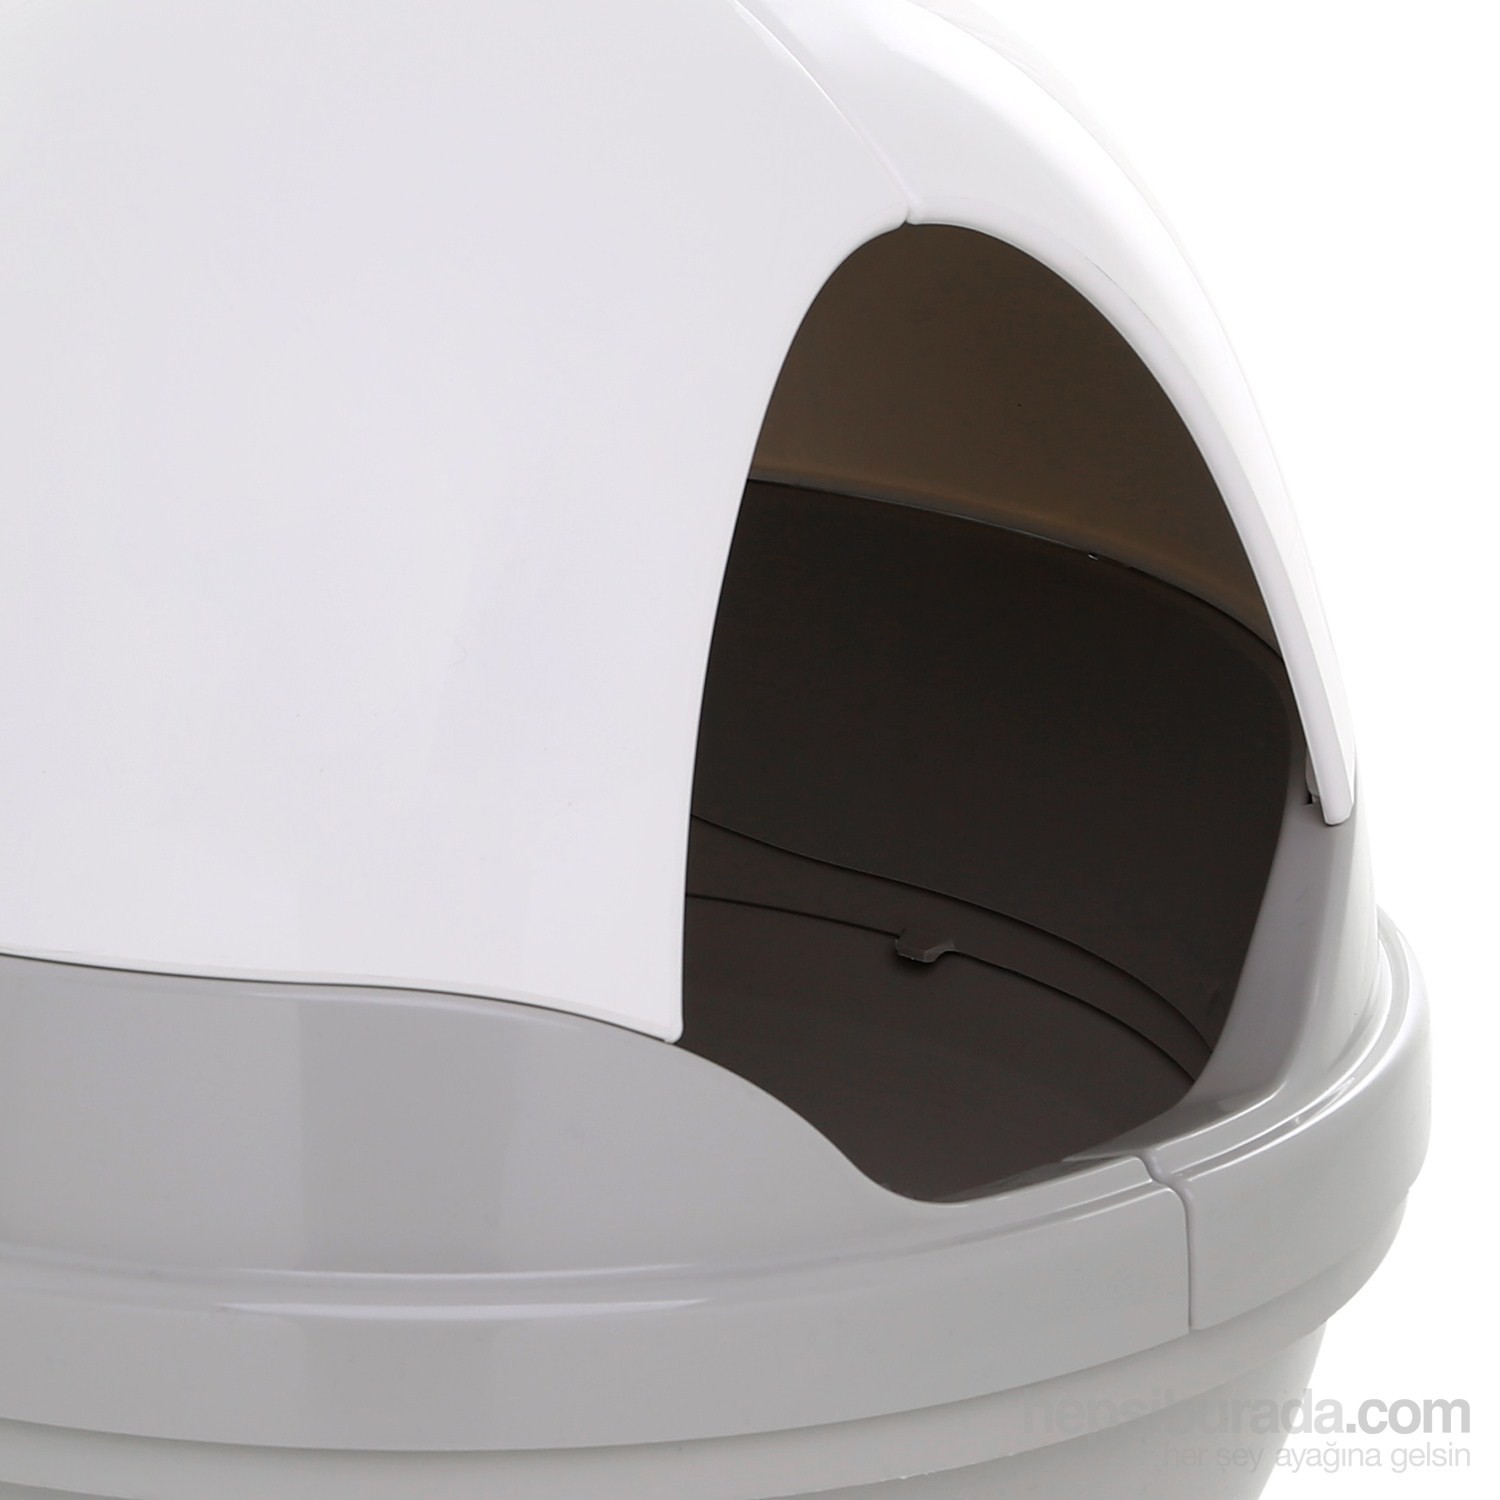 CatGenie 120+ Otomatik Kedi Tuvaleti Fiyatı Taksit Seçenekleri